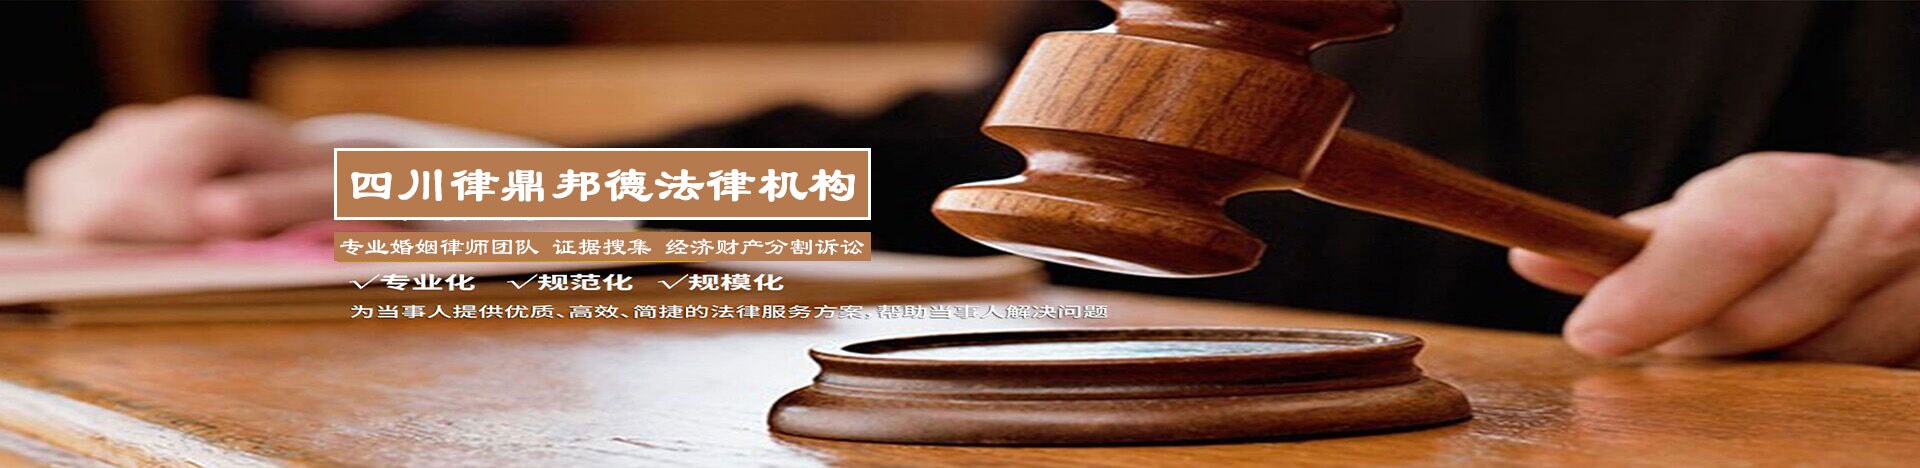 法律法规-【推荐】律鼎邦德离婚取证诉讼【1588 2222 007】婚姻律师|离婚取证咨询公司-